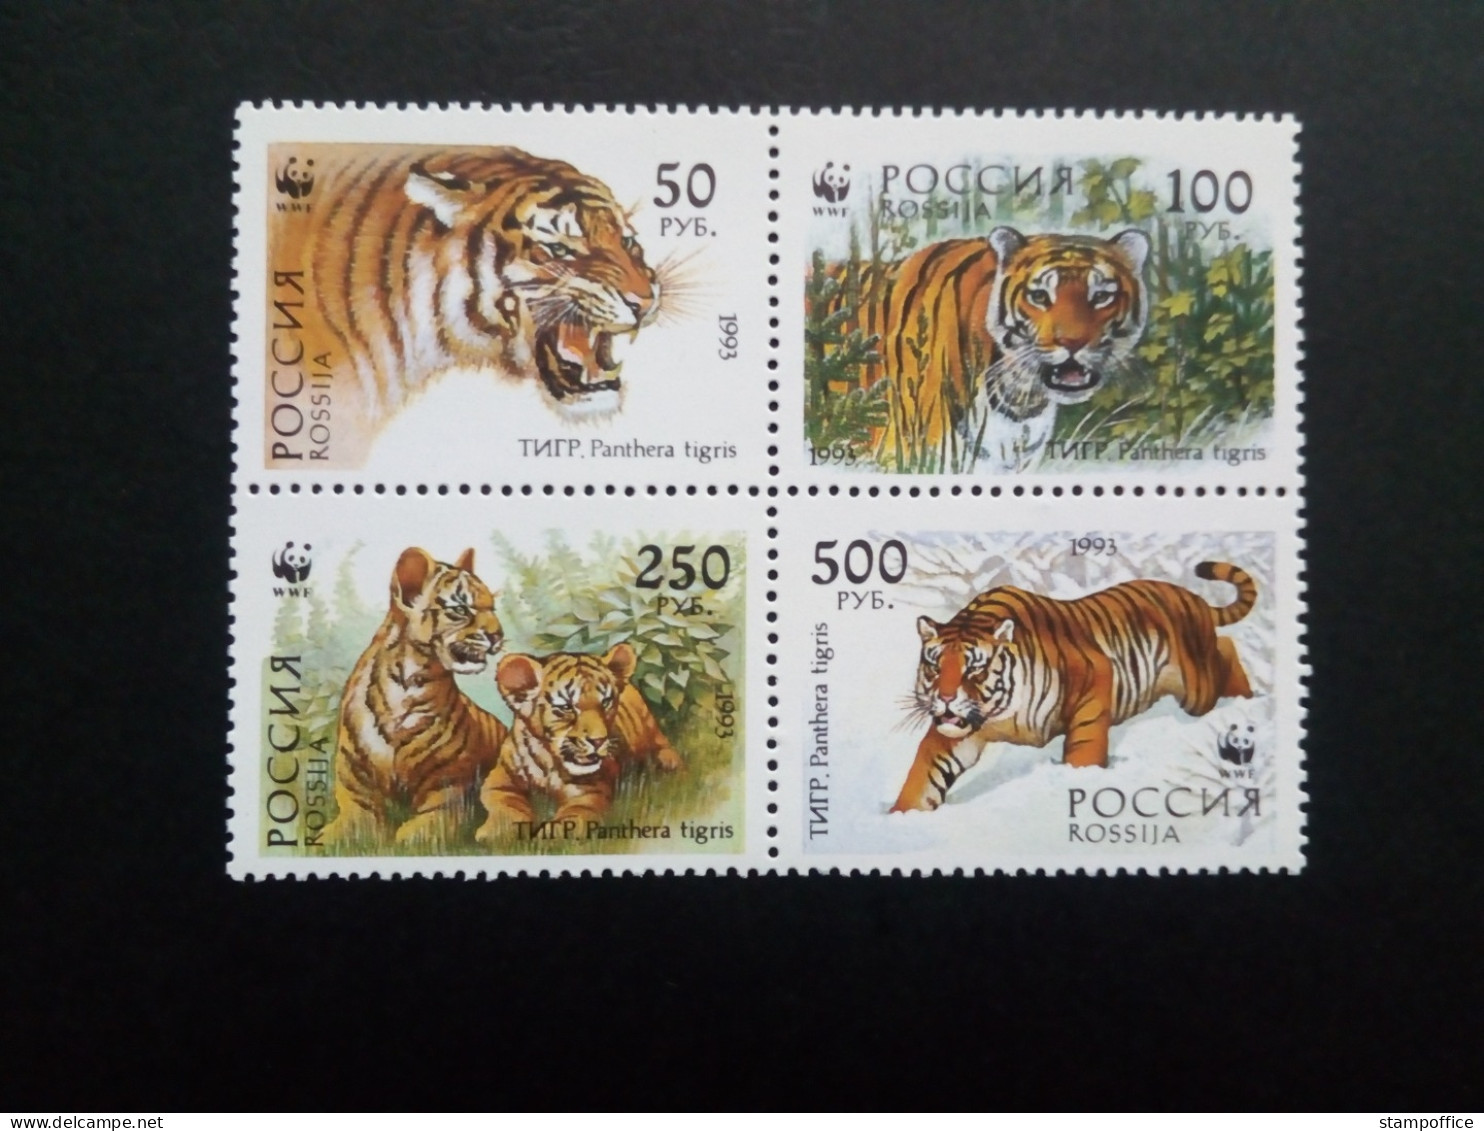 RUSSLAND MI-NR. 343-346 POSTFRISCH(MINT) SIBIRISCHER TIGER WWF 1993 - Raubkatzen